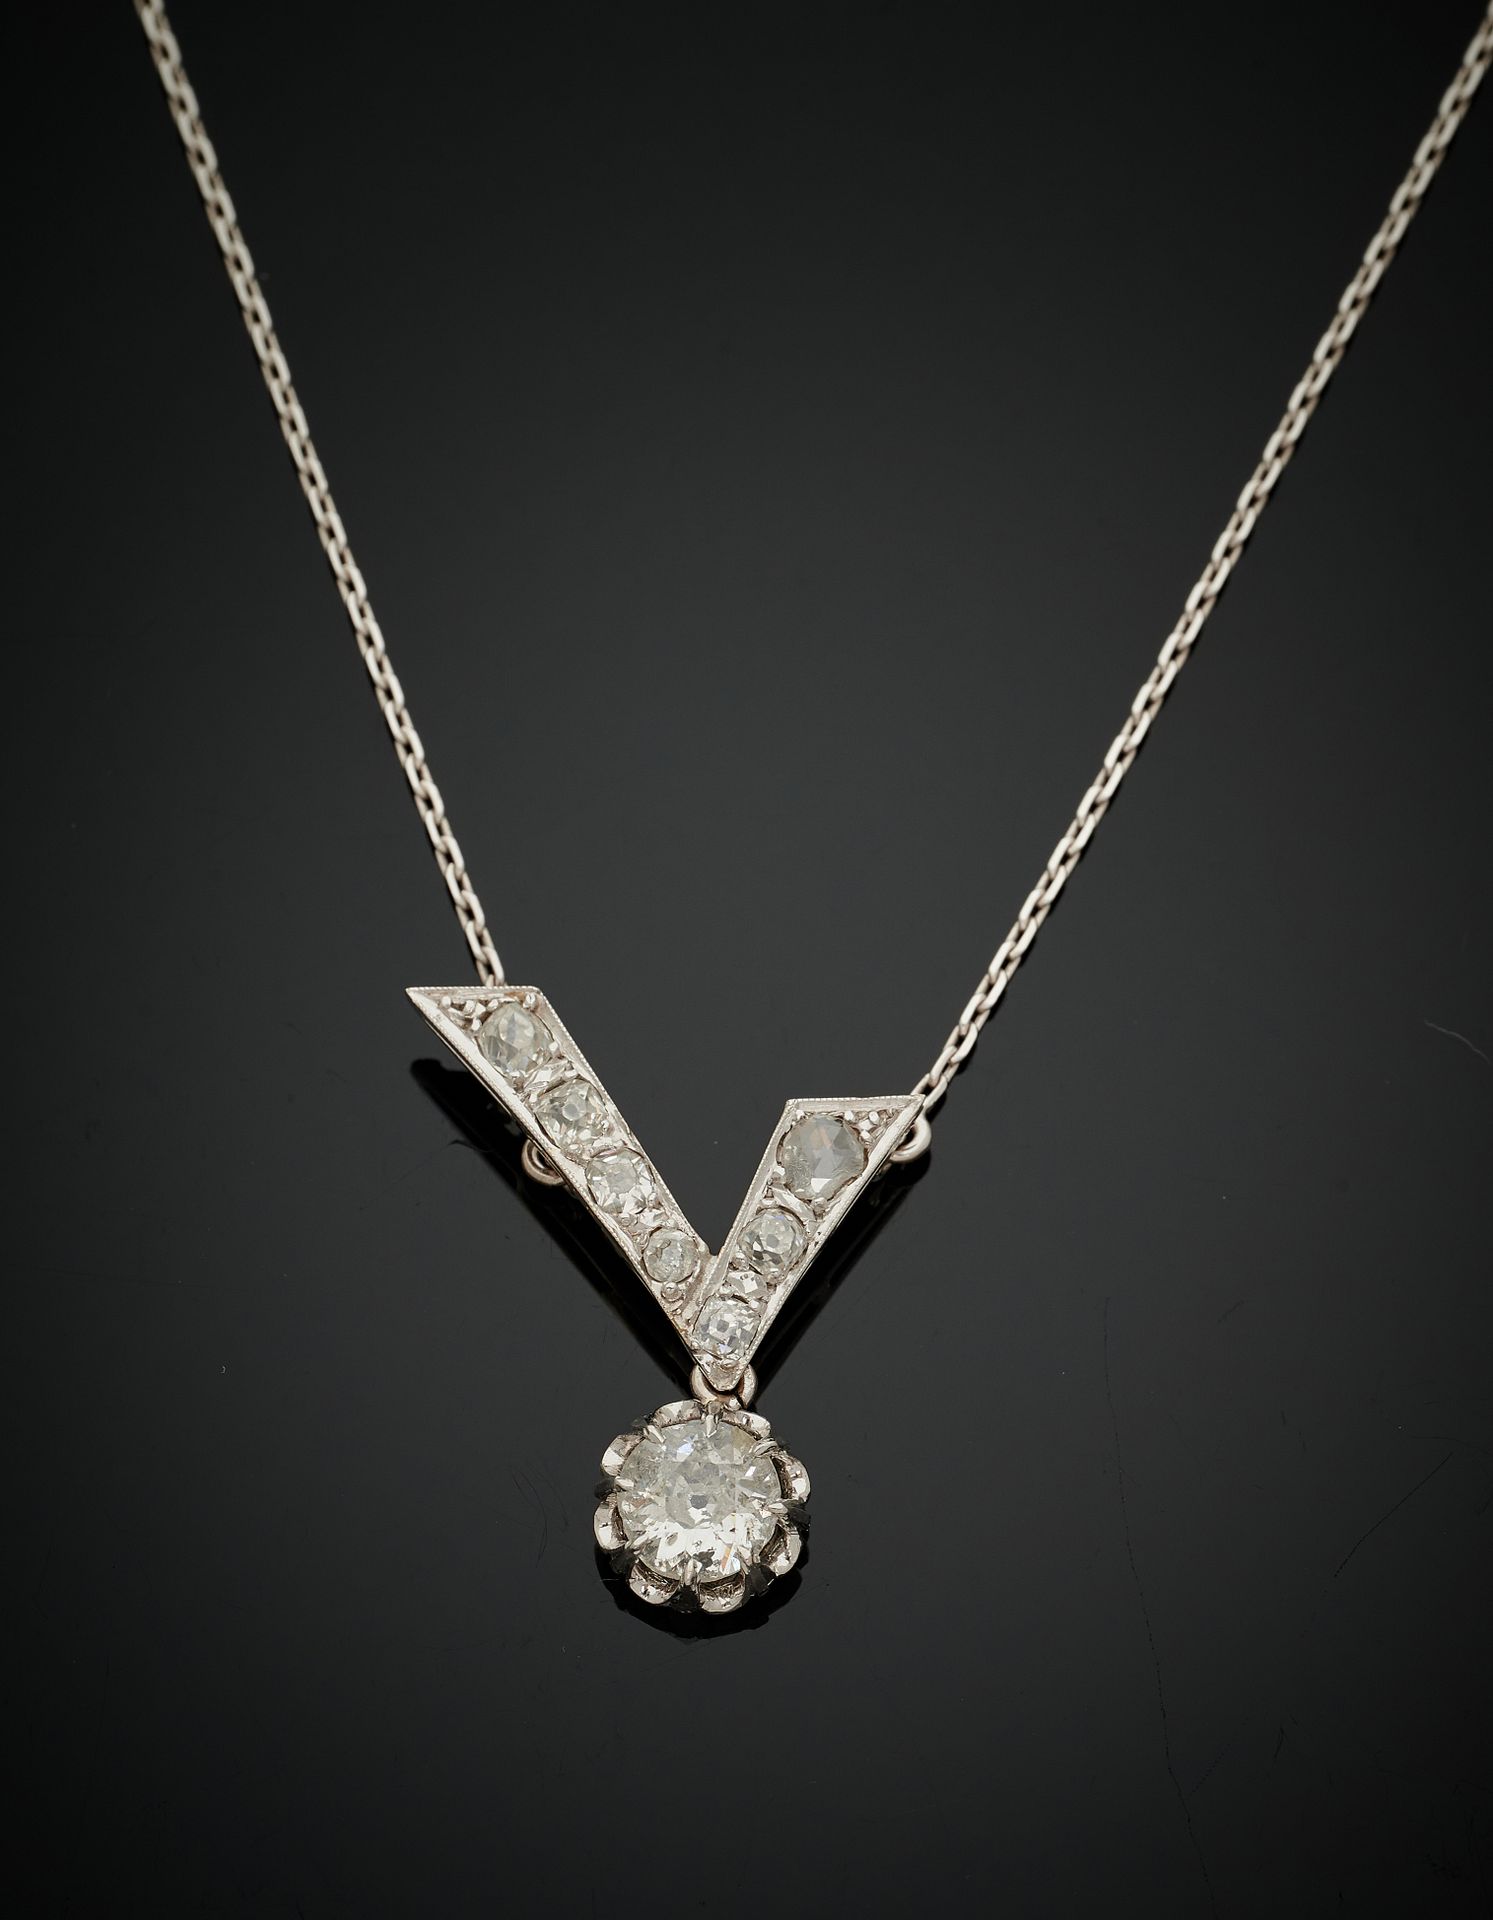 Null 白金（千分之七十五）项链，由一条镶嵌老式切割和玫瑰式切割钻石的 "V "形图案的链子组成，上面挂着一颗较大的老式切割钻石作为吊坠。小震荡。
长度：2.&hellip;